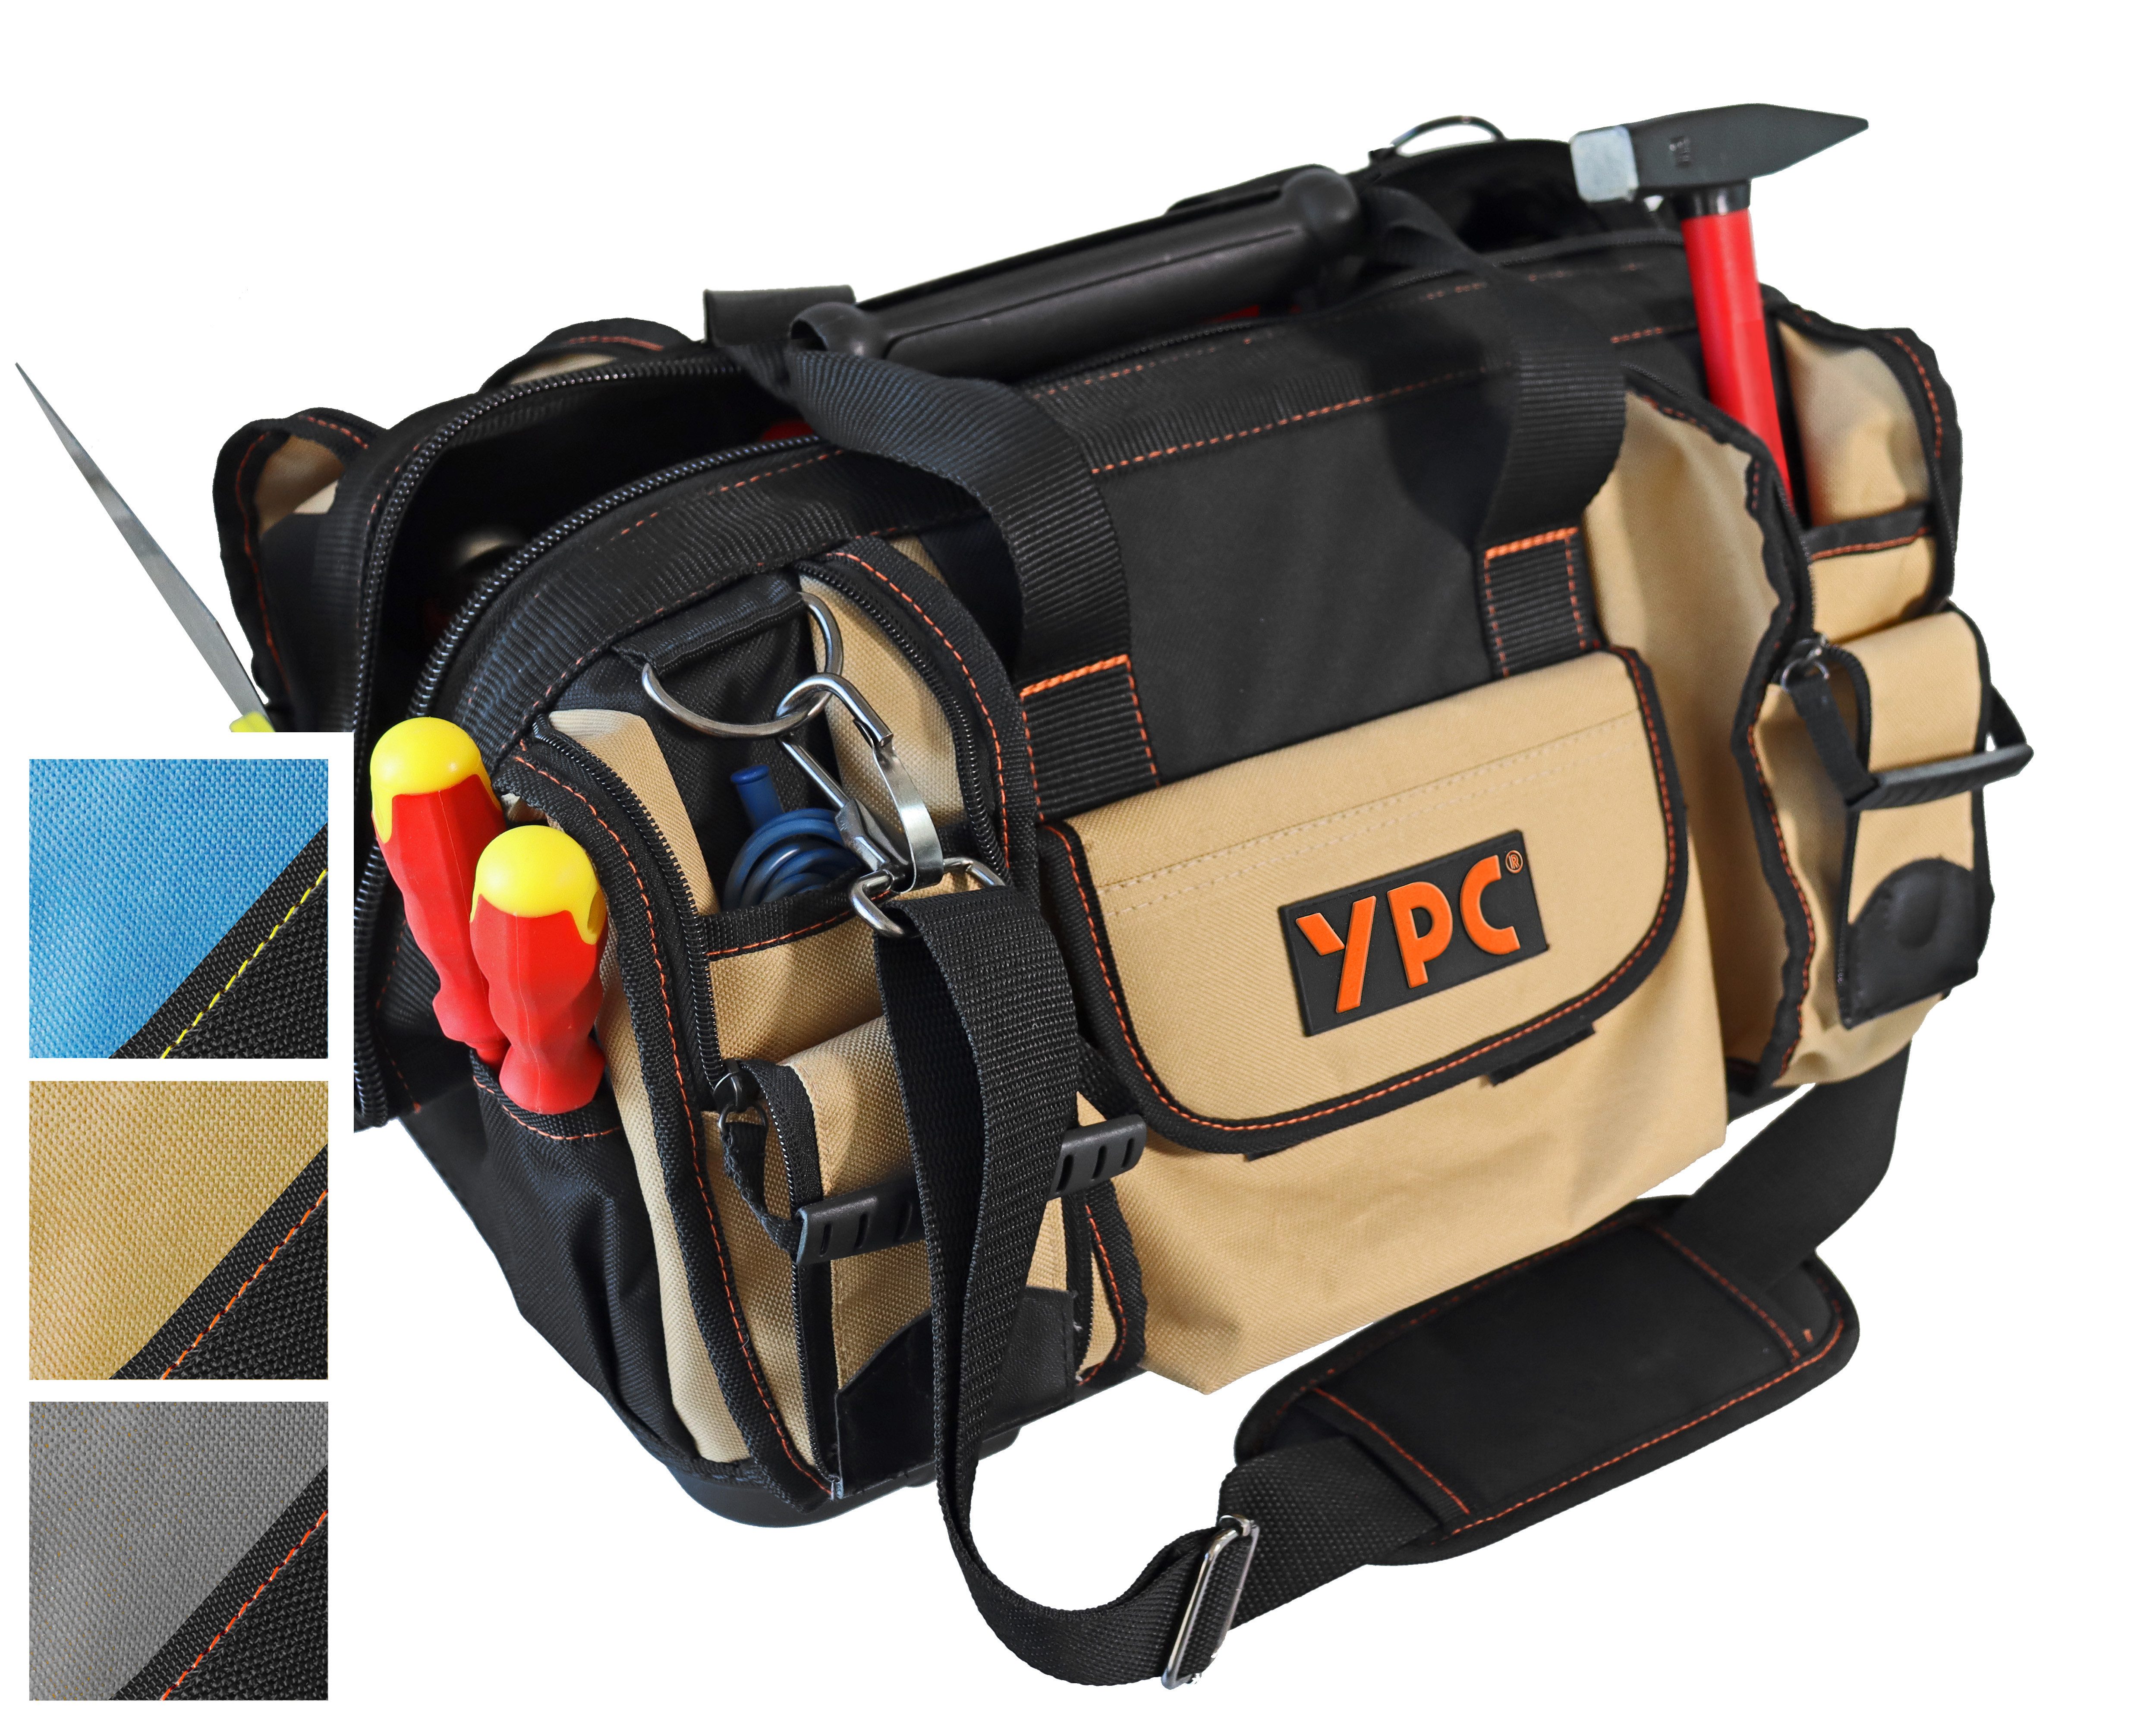 YPC Umhängetasche "Craftsman" Werkzeugtasche XXL, 42x30x25cm, 40 Liter, Verstärkte Nähte, Schultergurt mit Polster, Kunststoff-Handgriff